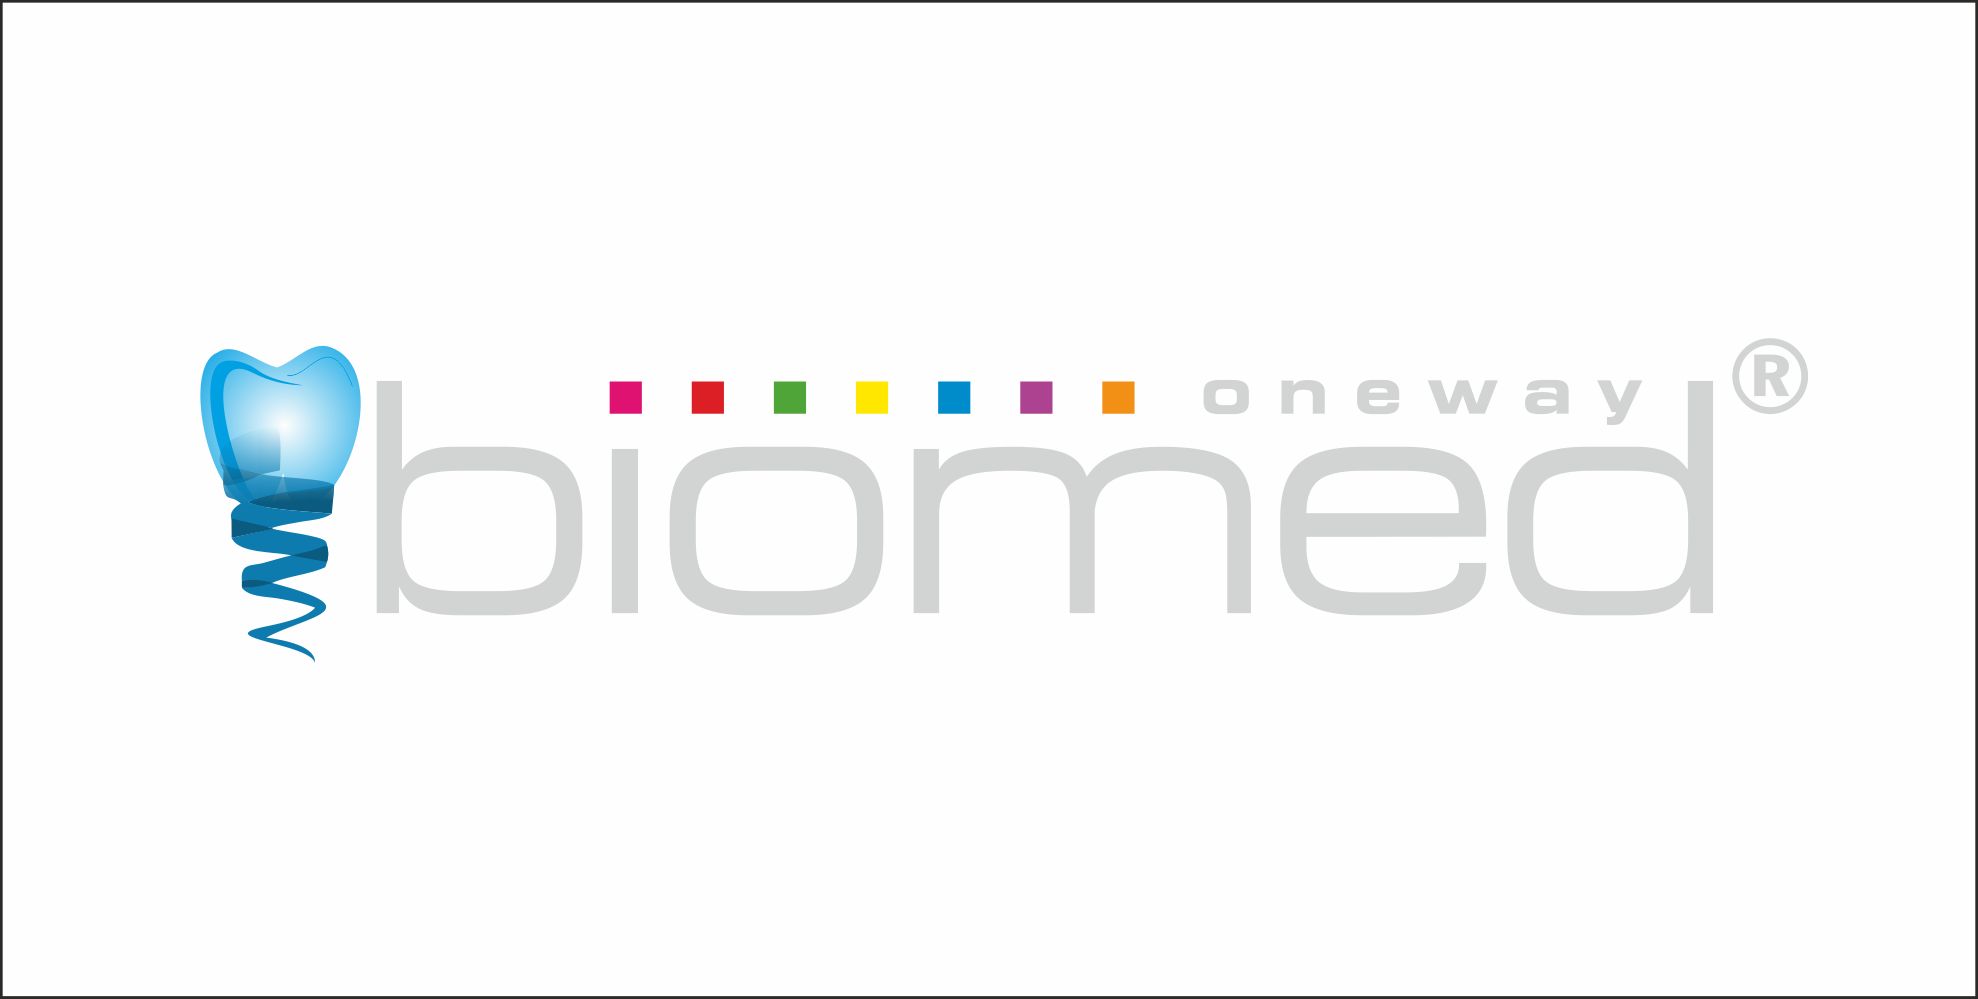 Фирменный стиль и знак для Oneway biomed  - дизайнер diz-1ket